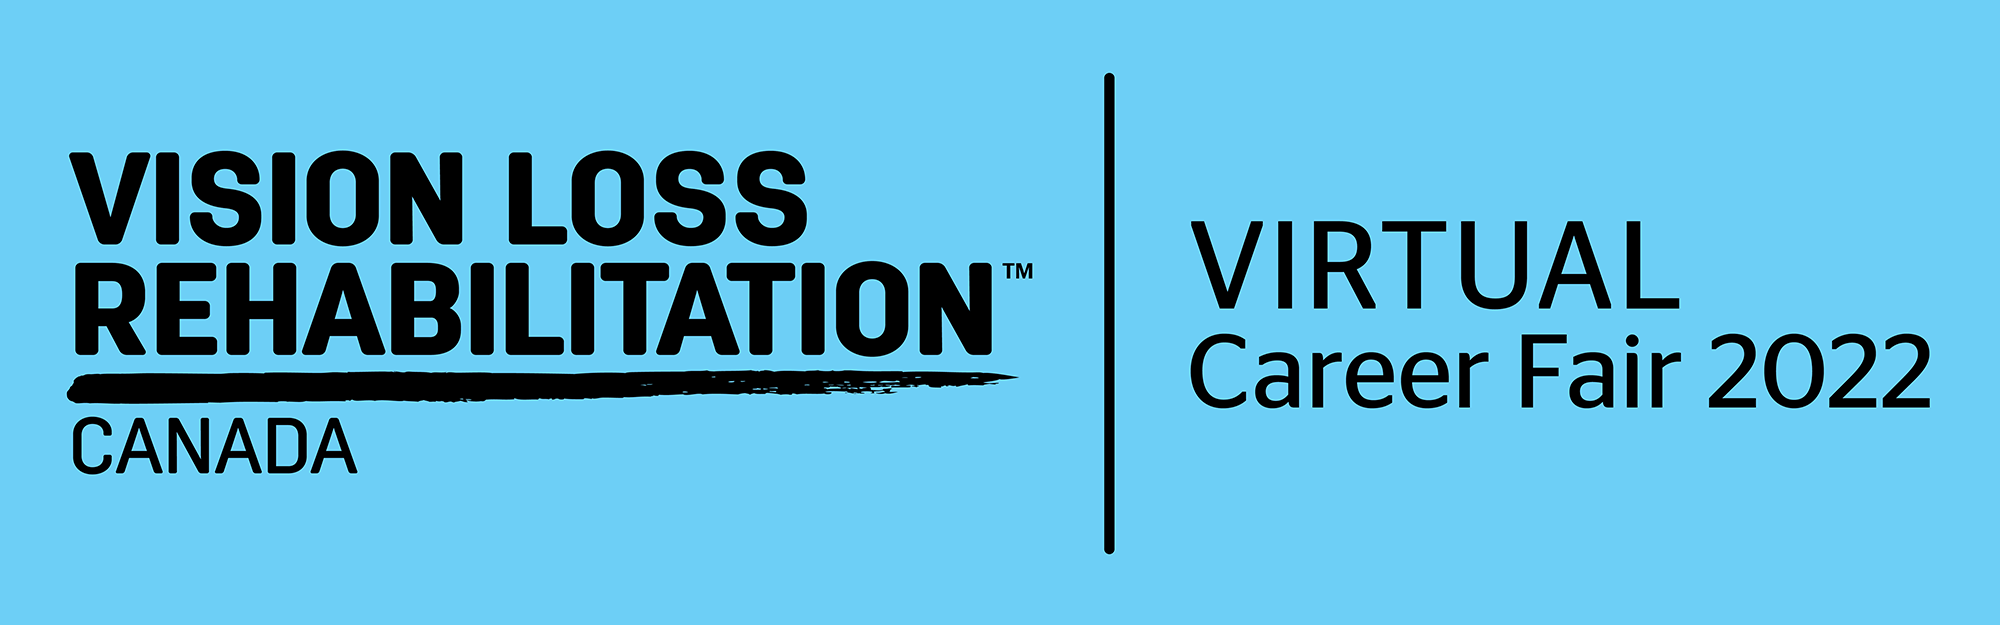 Banner that says Vision Loss Rehabilitation Canada Virtual Career Fair 2022